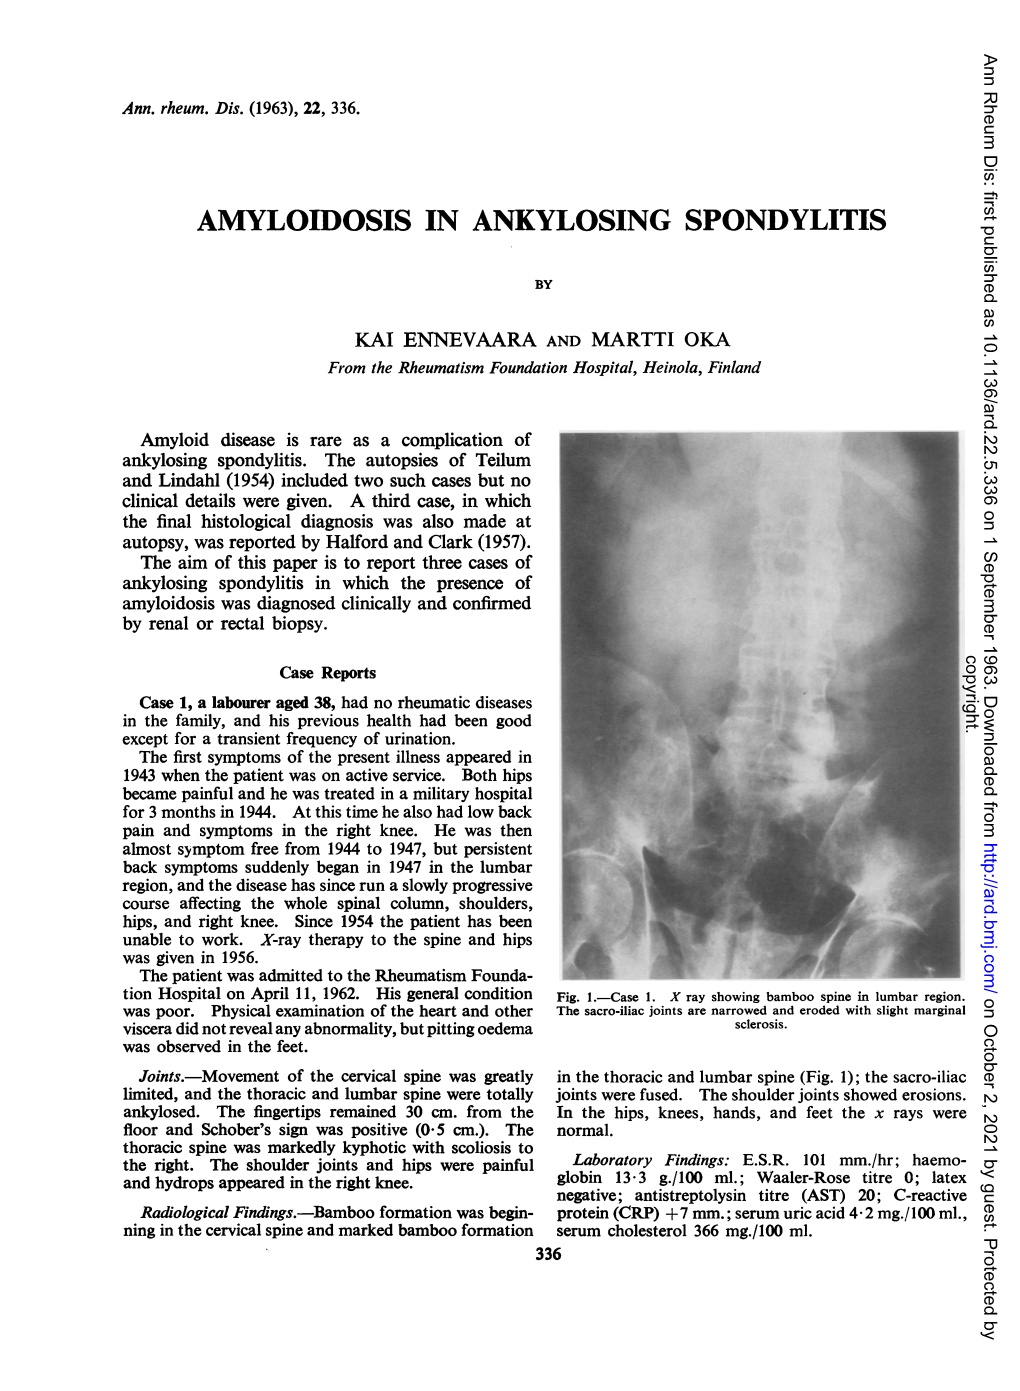 Amyloidosis in Ankylosing Spondylitis